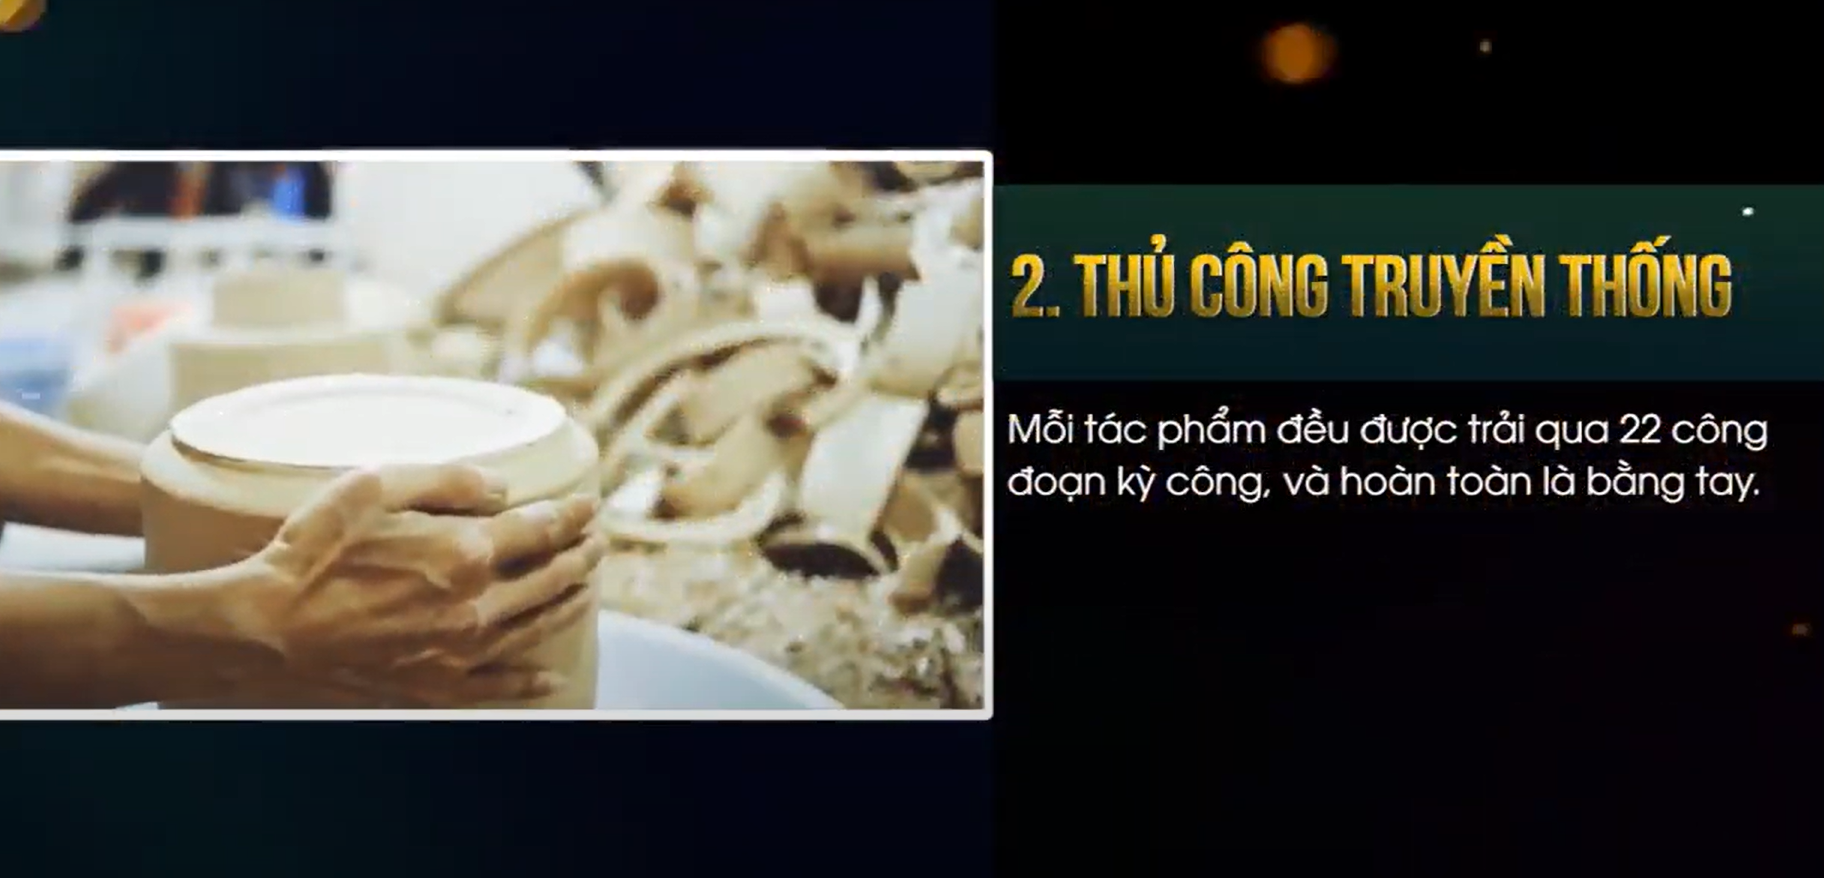 8 tiêu chí sản phẩm Gốm Tâm Linh Việt - Điểm chạm tinh hoa